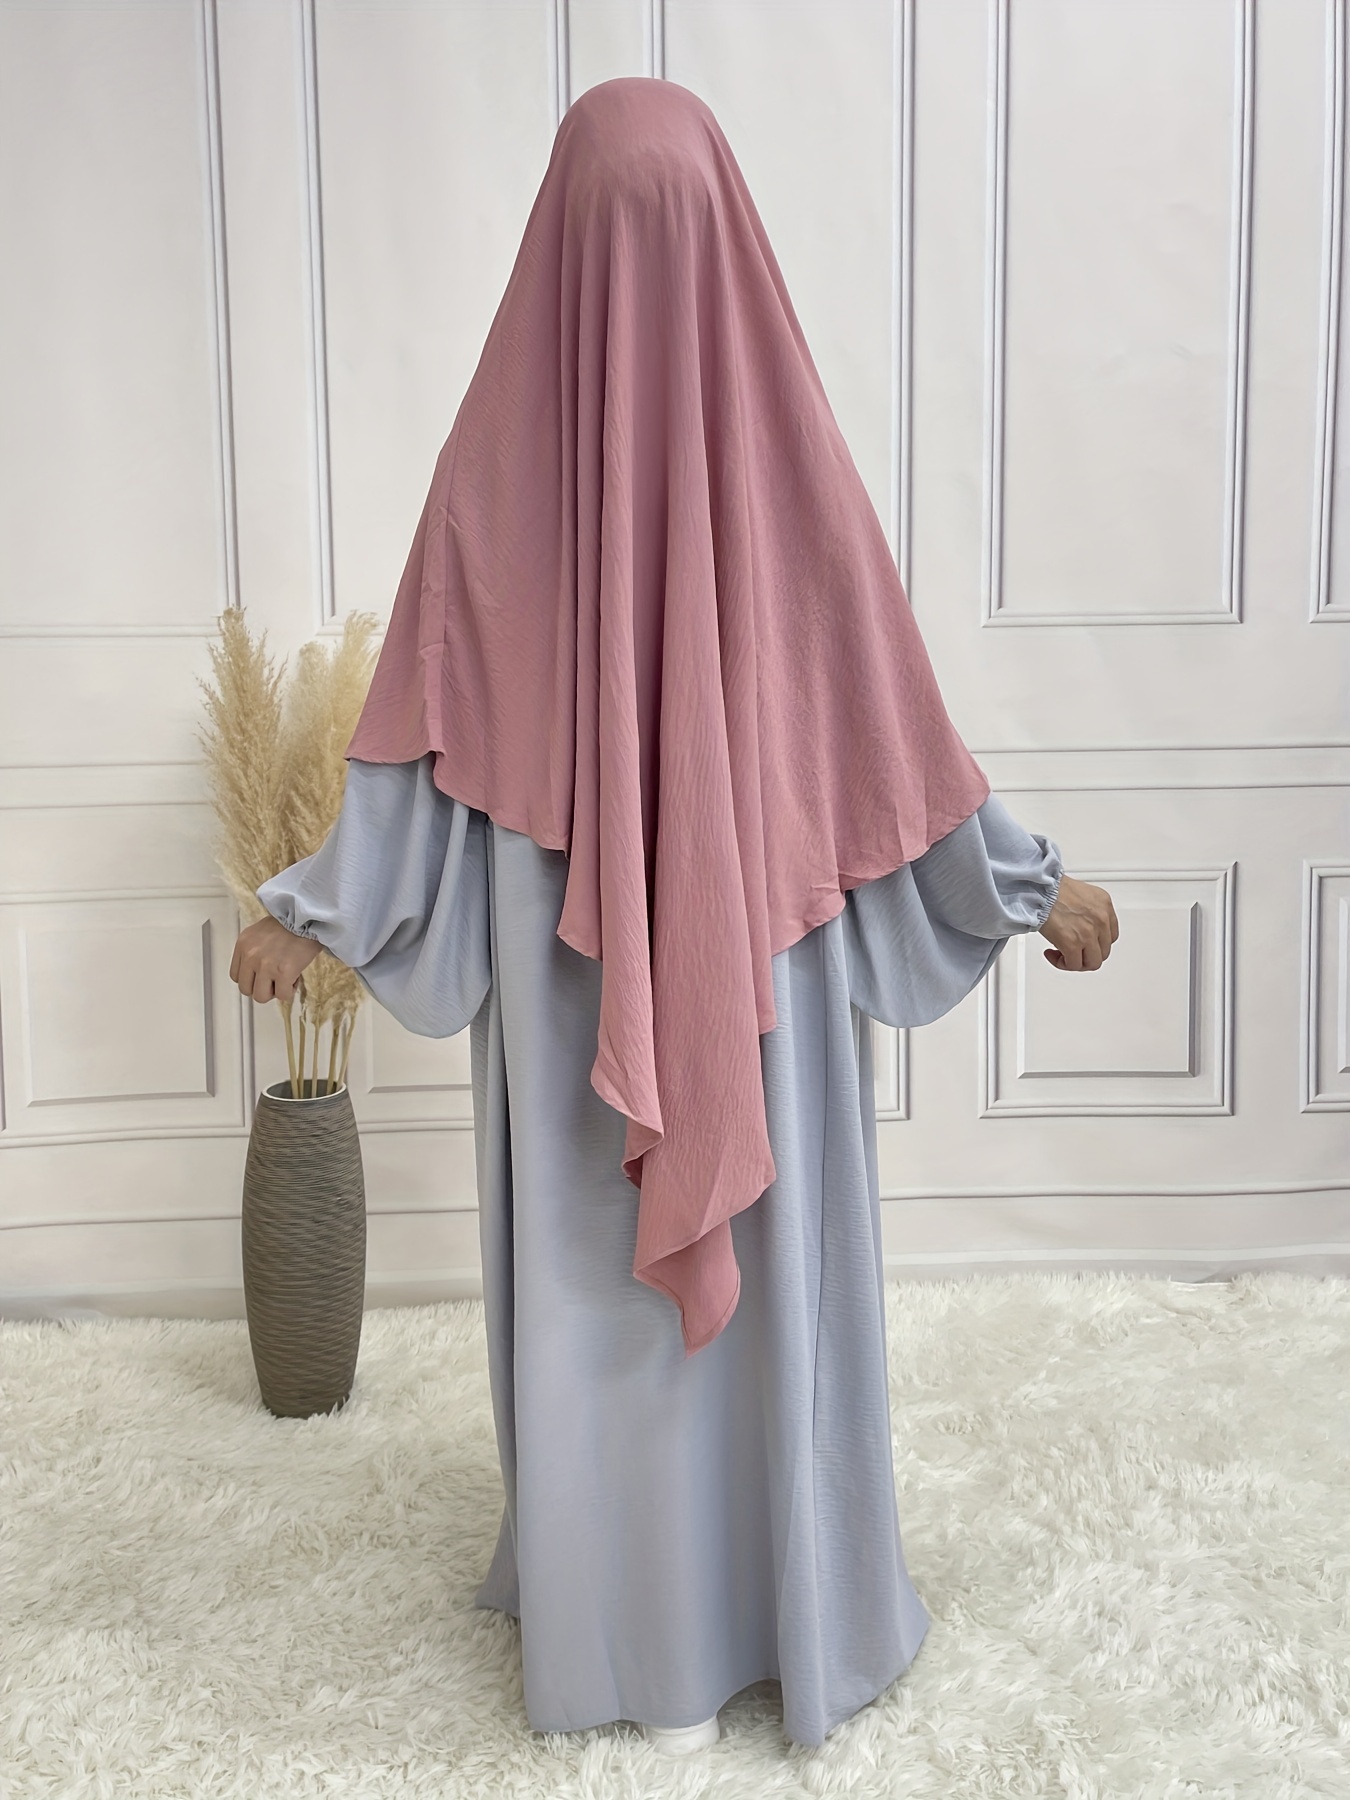 2020 Nuevo diseño de ropa Islámica vestimenta musulmana Caftans larga bata  de desgaste de los musulmanes de vestimenta islámica para la mujer vestido  modesto en el Islam, el hijab Abaya fábrica de